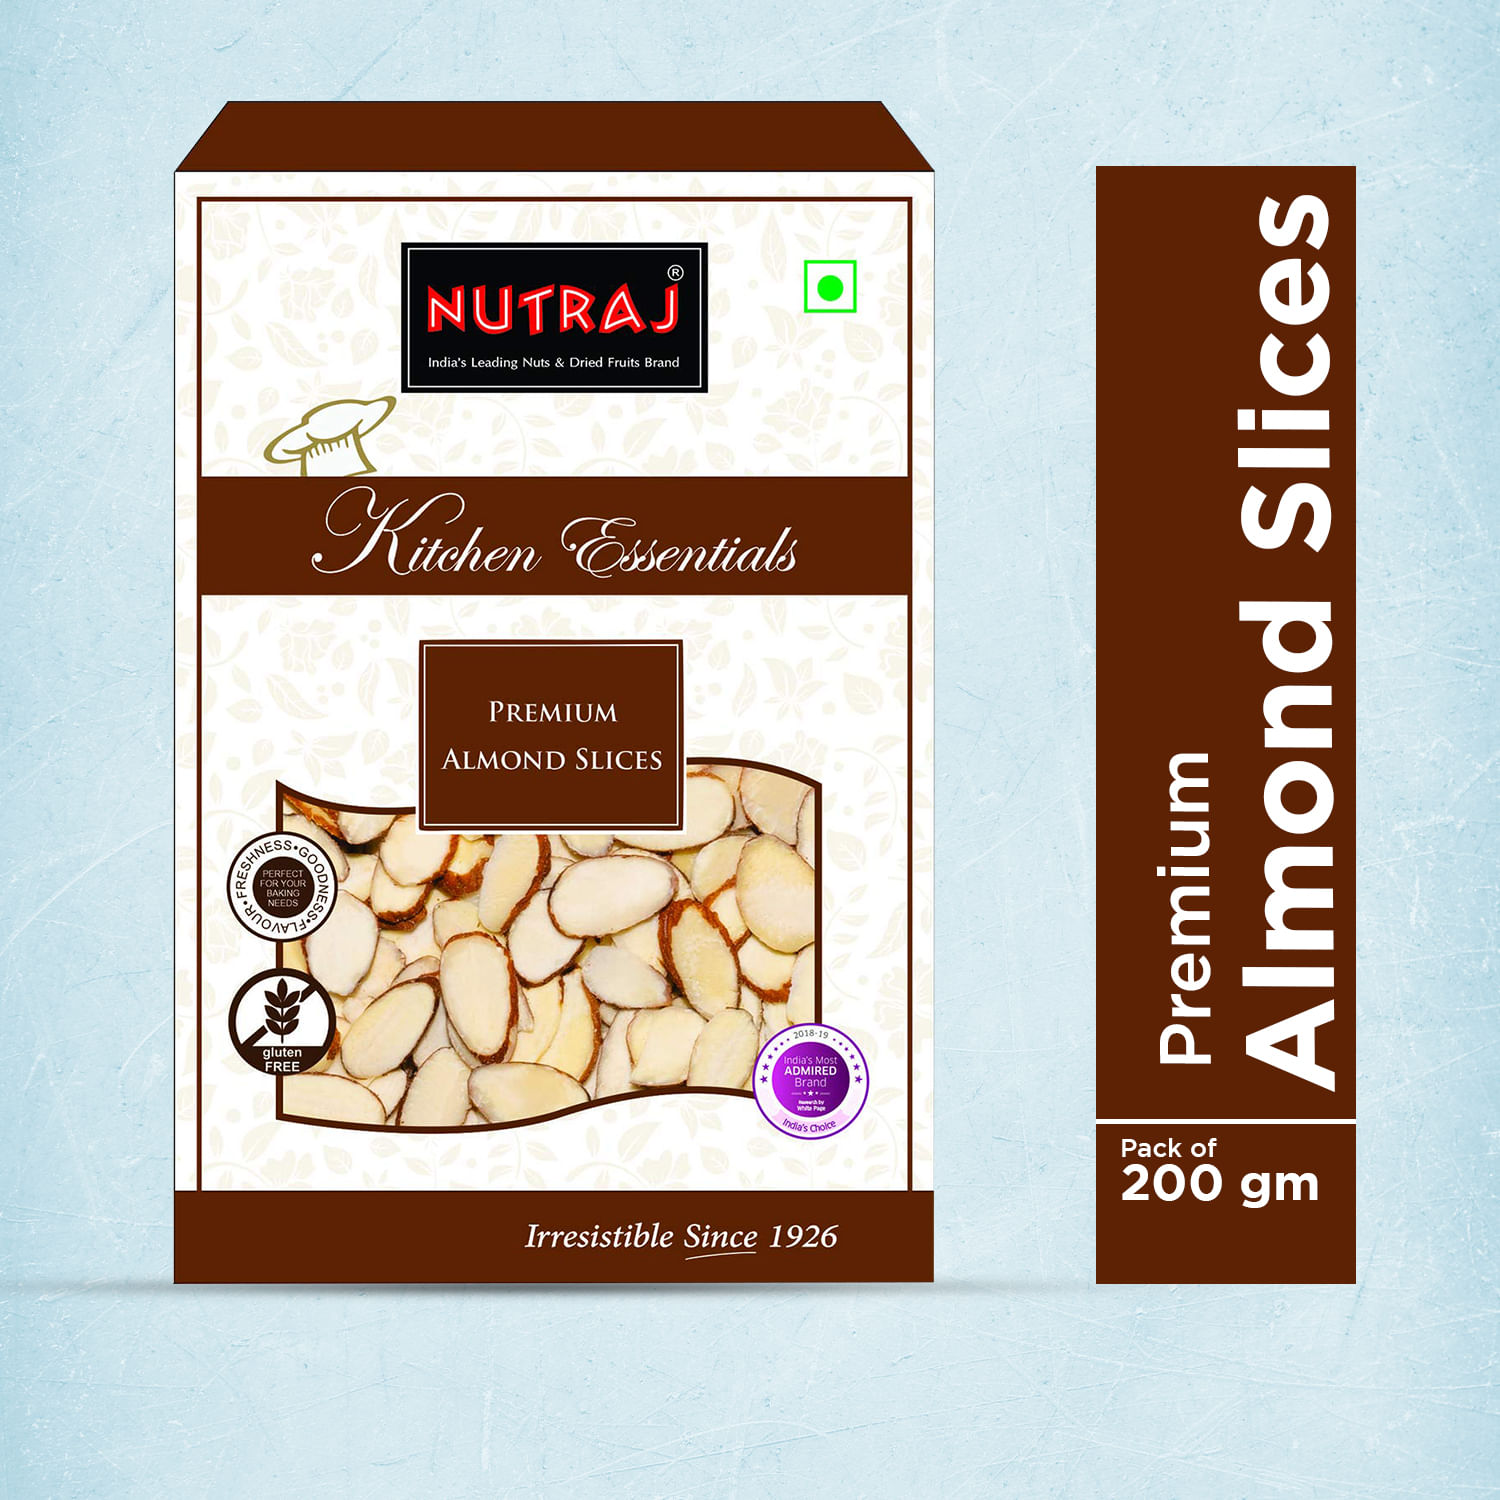 Nutraj Kitchen Essential Premium Almond Slices 200g